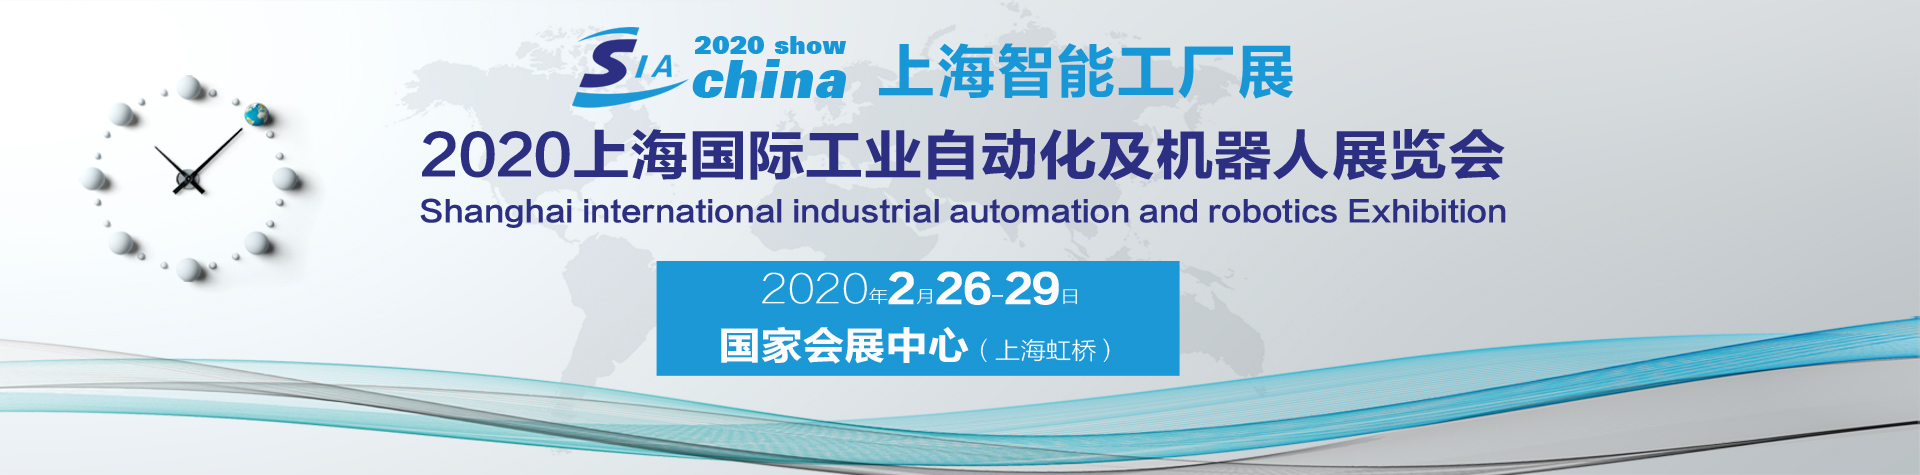 2020*十八届中国上海国际工业自动化及工业机器人展